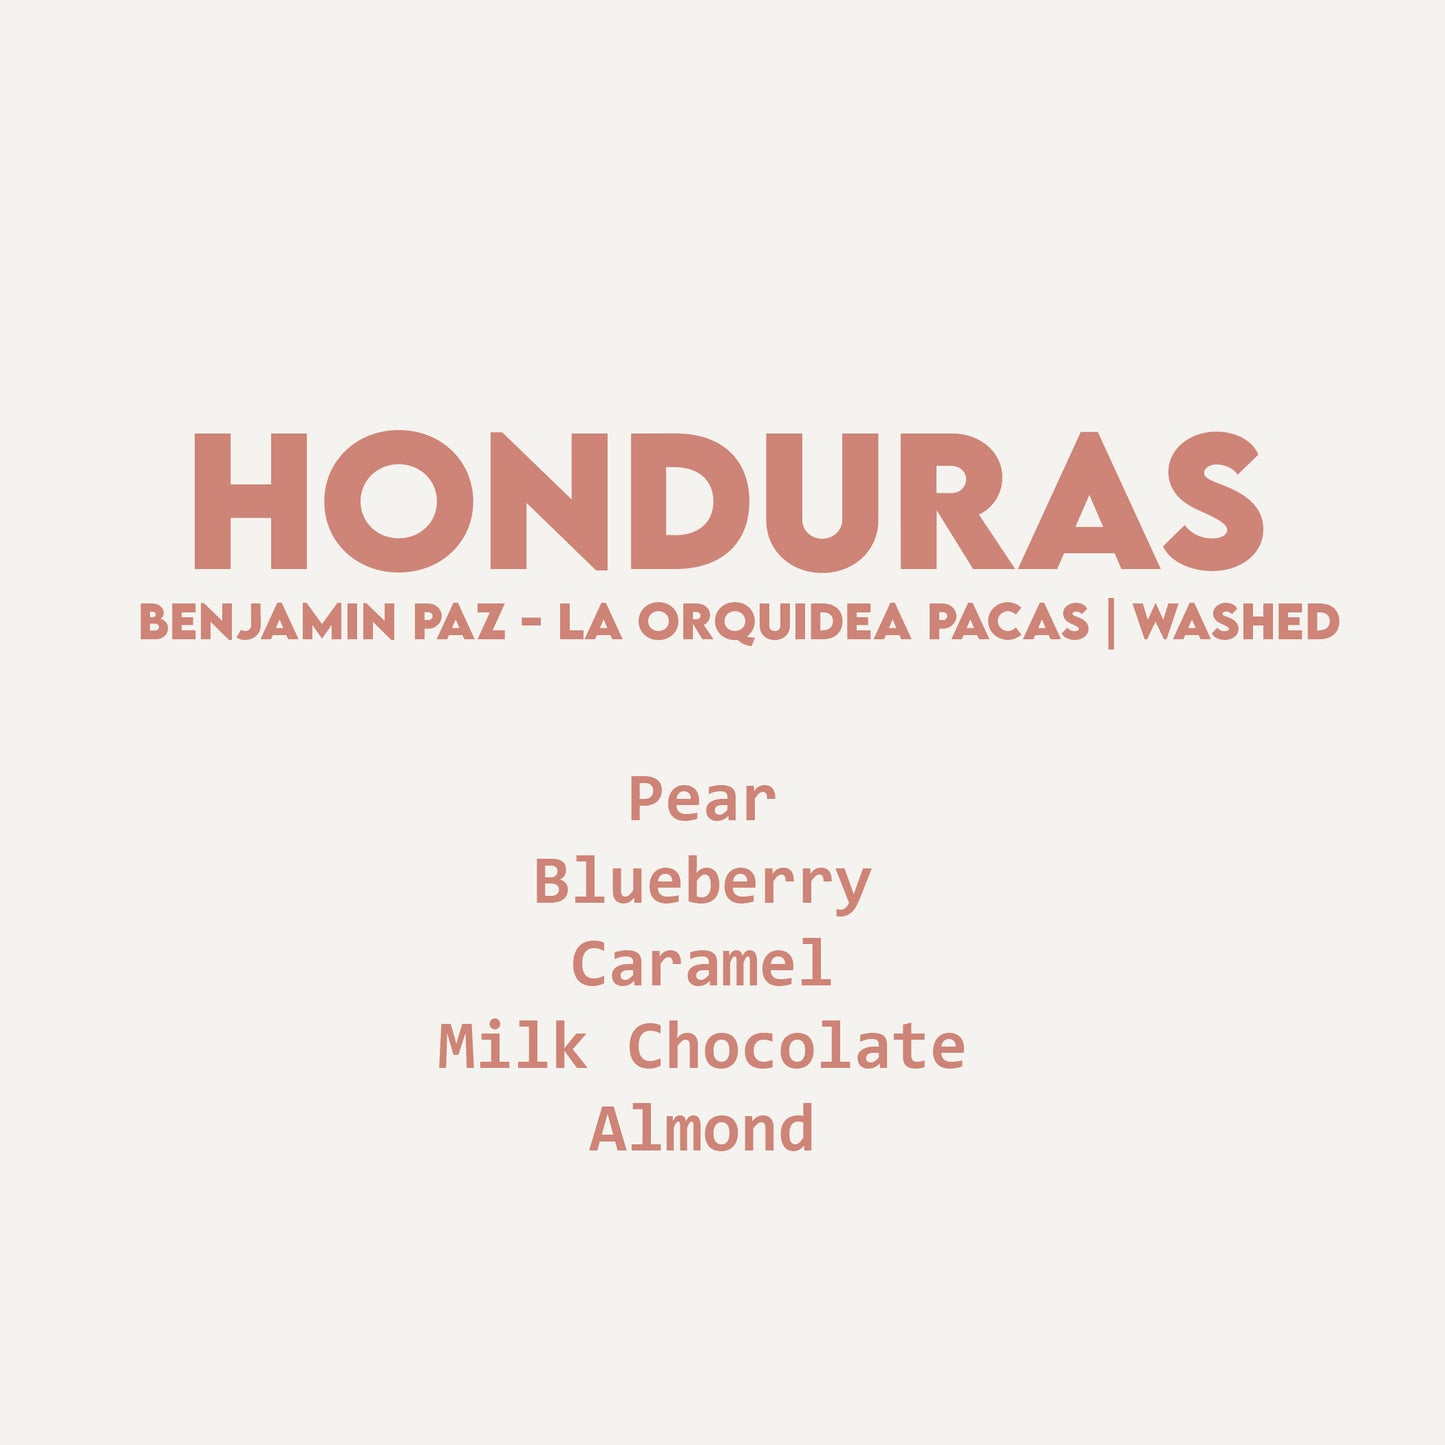 Honduras - Benjamin Paz - La Orquidea Pacas | Washed